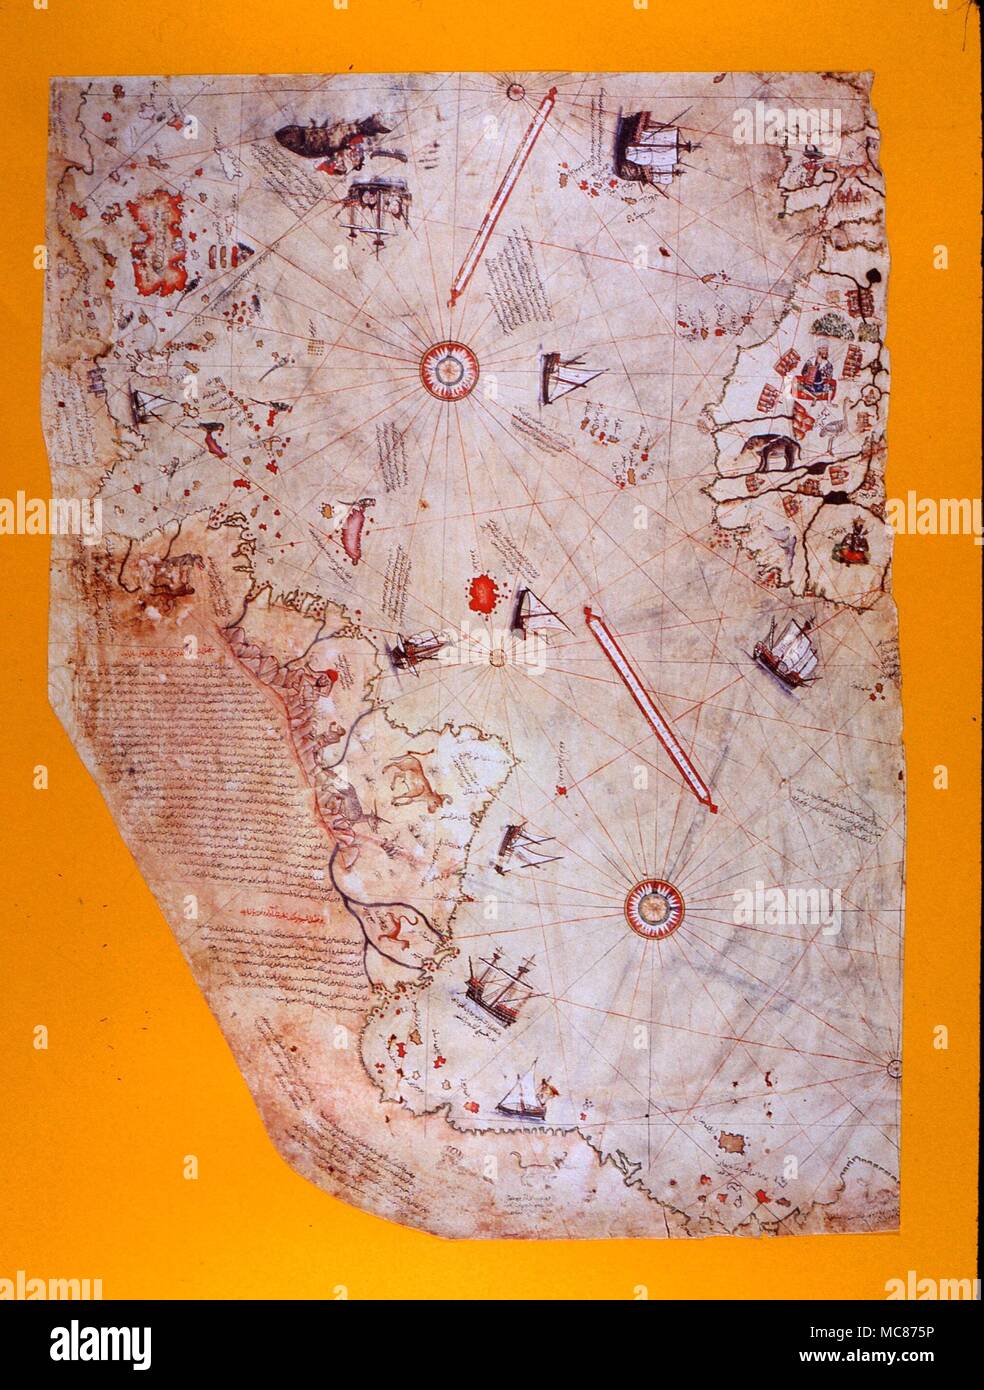 Merkwürdige Phänomene die Piri Reis Karte der Welt, datiert 1513. Es wird behauptet, dass die Küste der Antarktis (nicht bis zur Neuzeit bekannt) am unteren Rand angezeigt wird. Bild nach dem Maßstab der Reproduktion in der Tokapi Palast, Istanbul Stockfoto